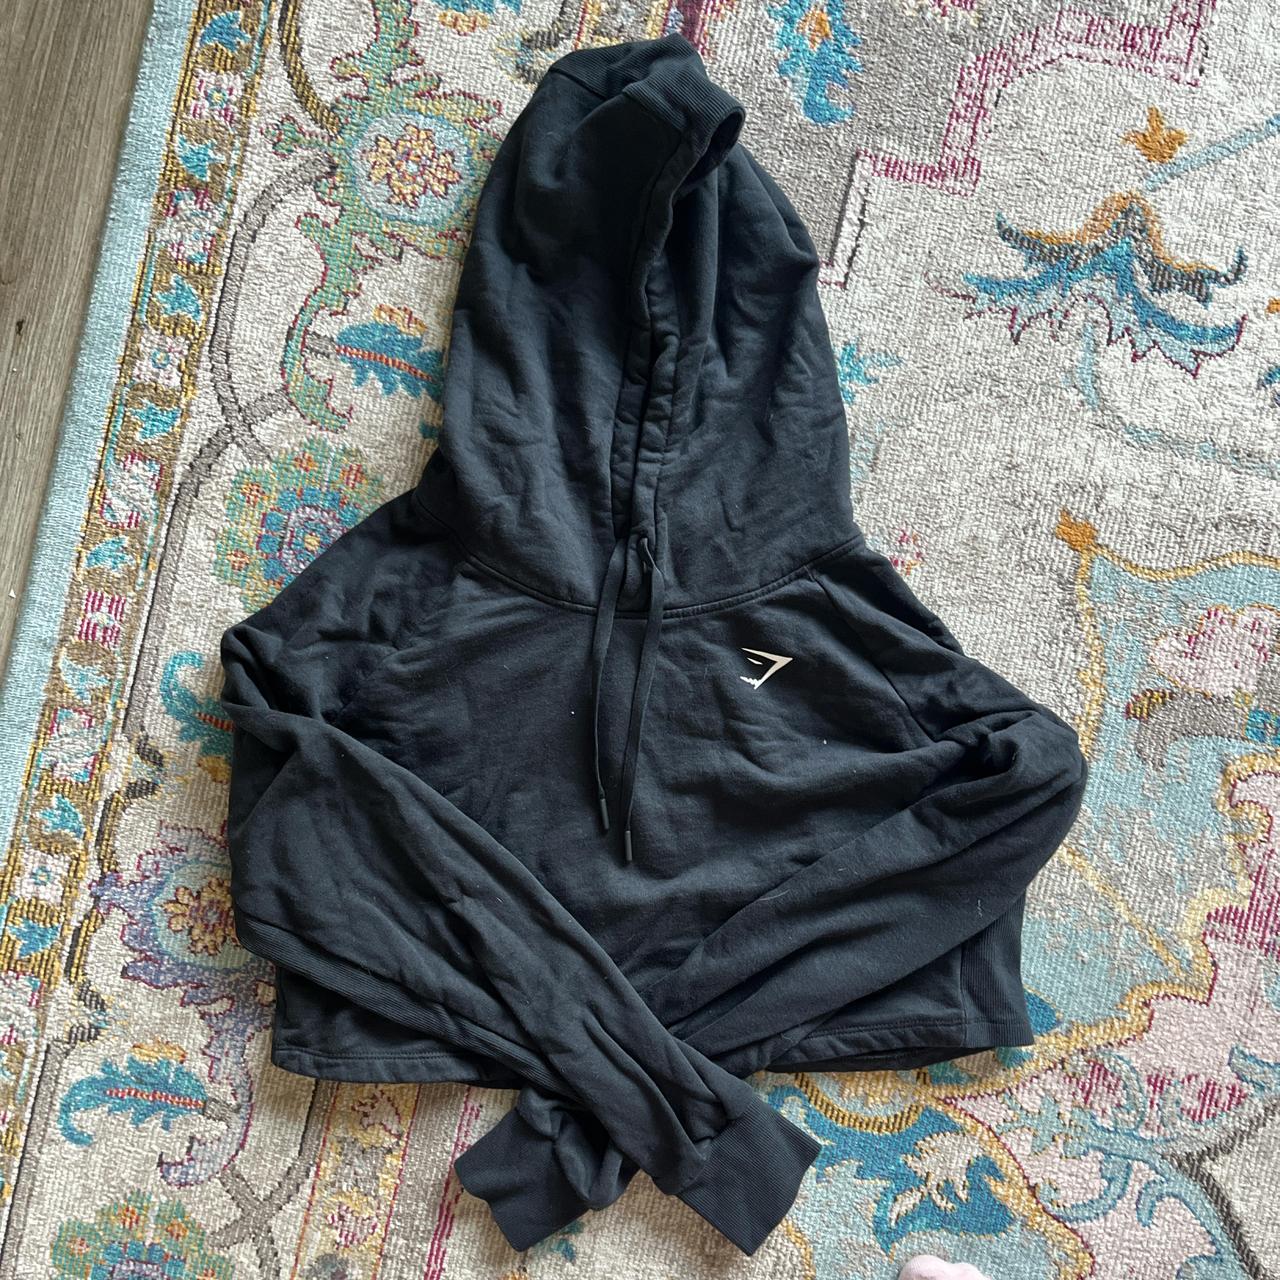 Vintage Gymshark lux hoodie Size large Worn a - Depop